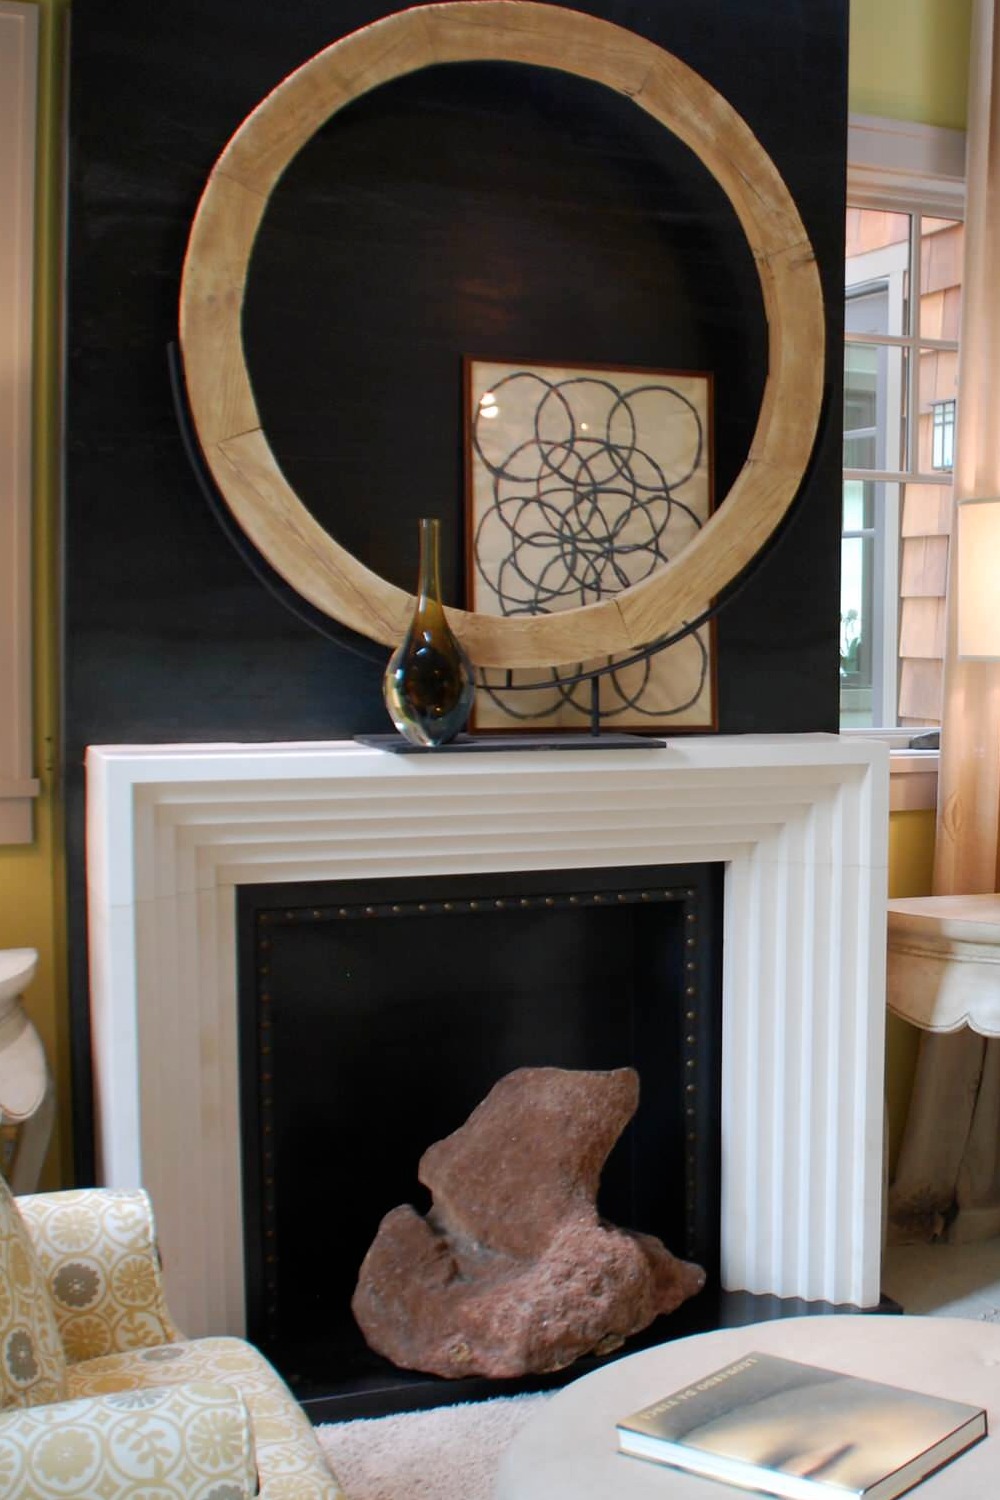 Black Granite Hearth Surrounds Walls Art Accessories Objects Interior Design Room